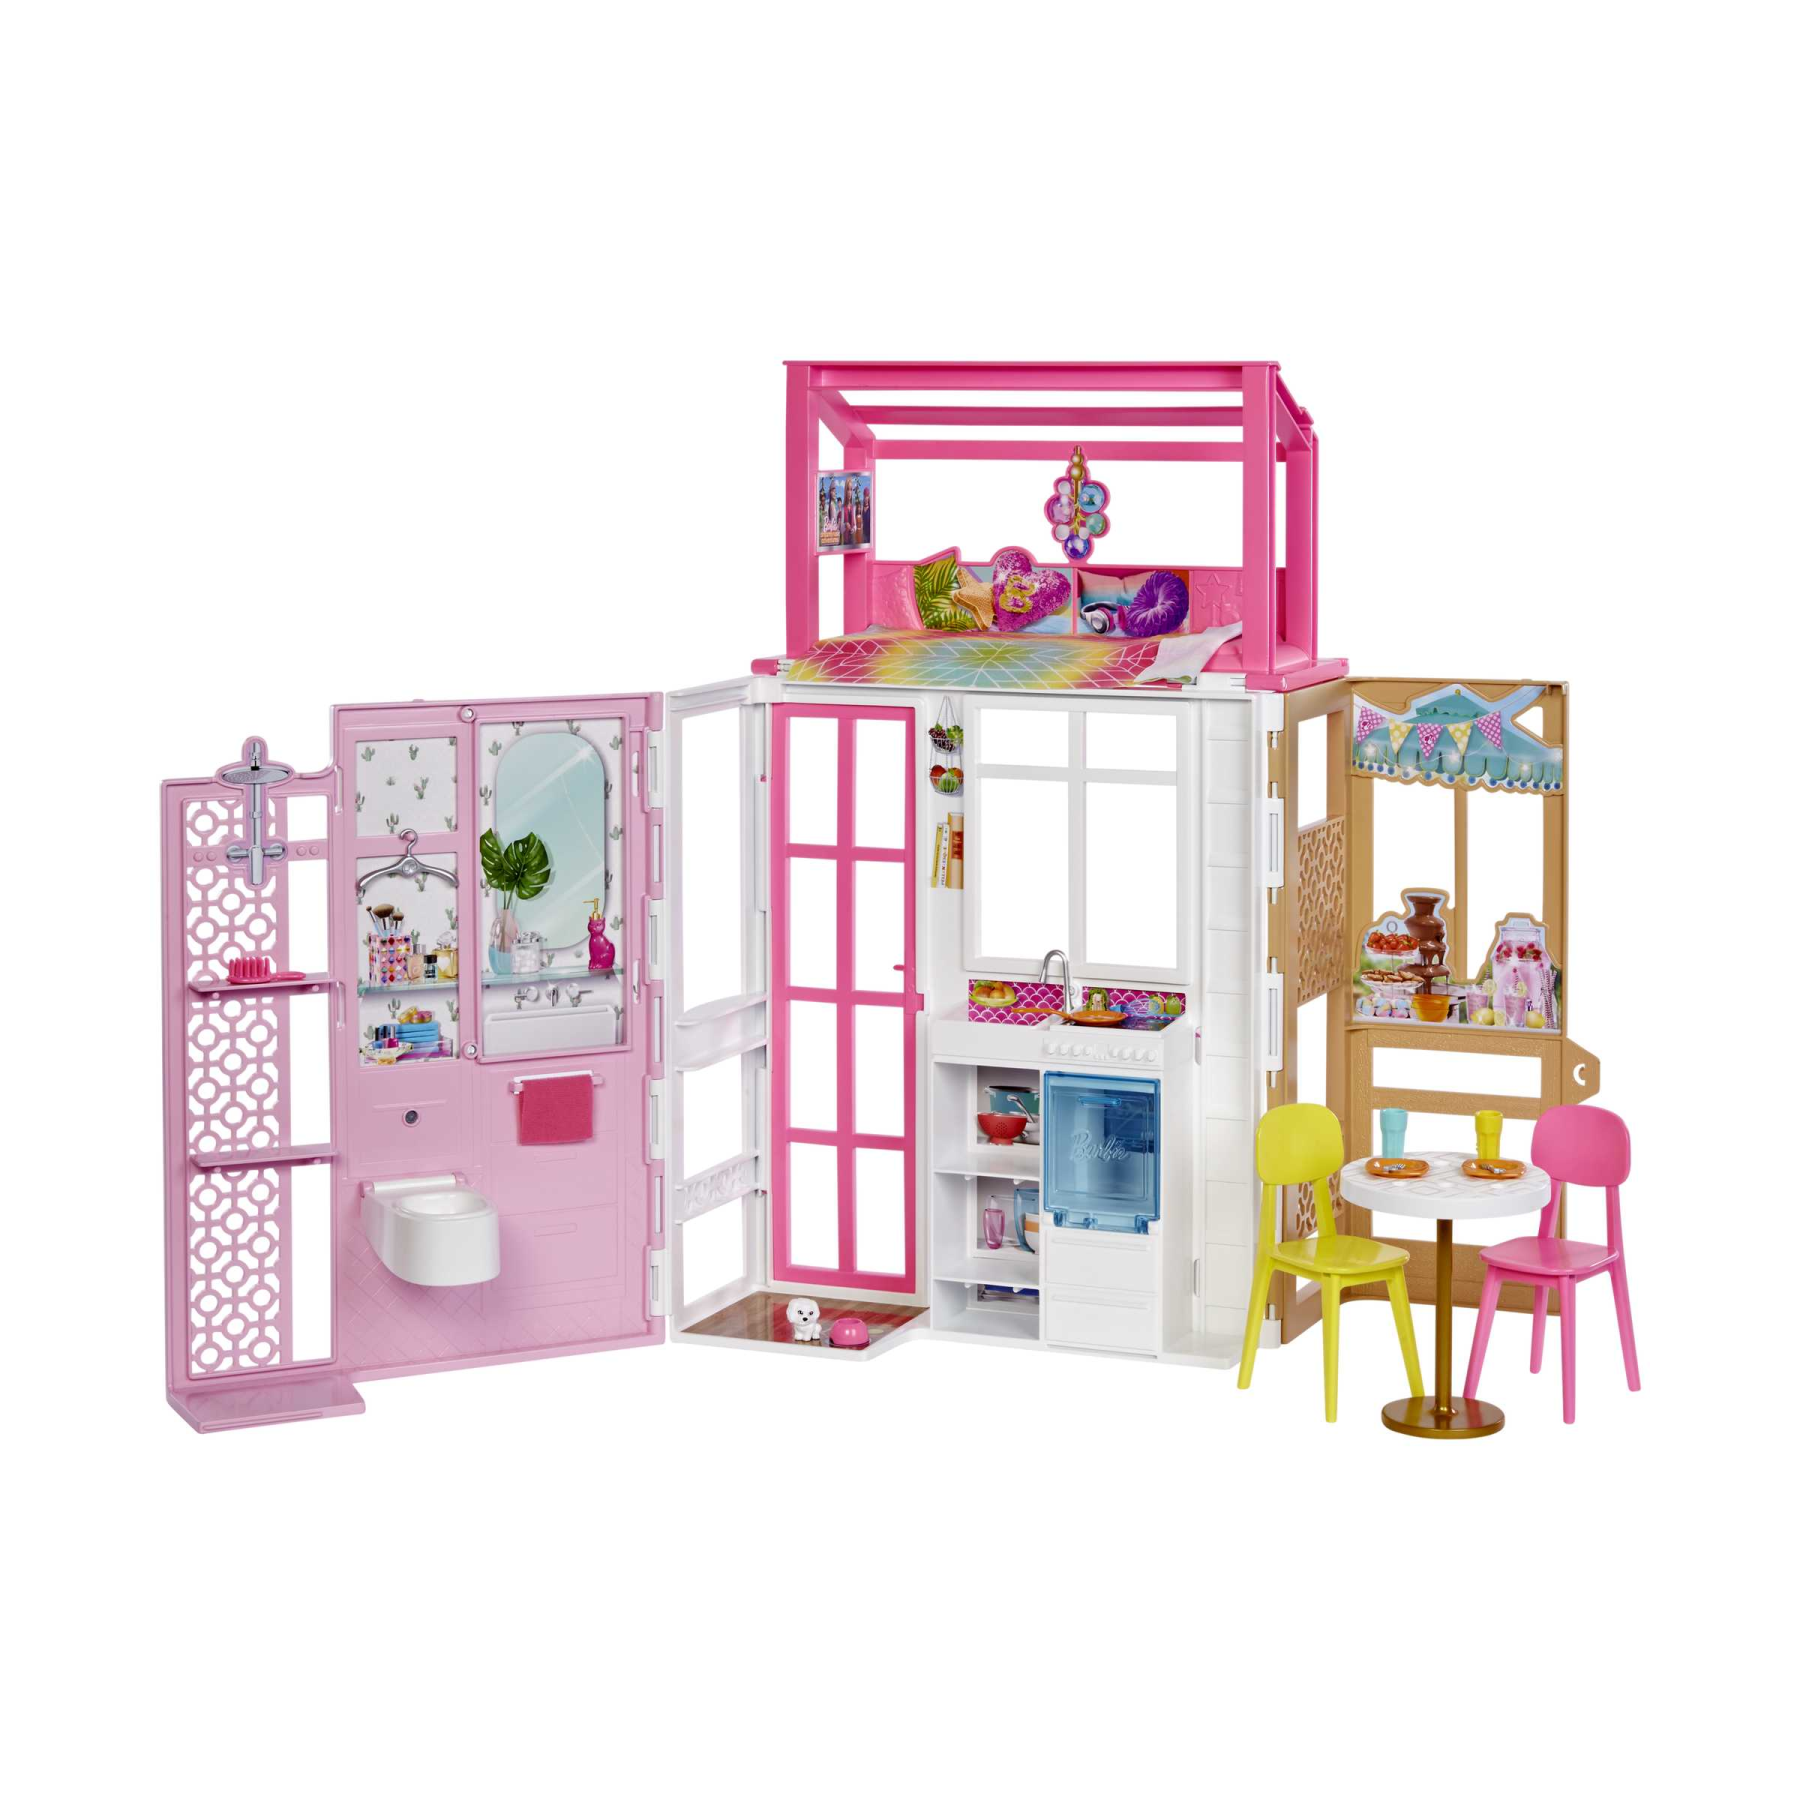 Barbie casa a 2 piani, con 4 aree gioco, completamente ammobiliata, casa di barbie con cucciolo e accessori, regalo e giocattolo per bambini 3+ anni - Barbie